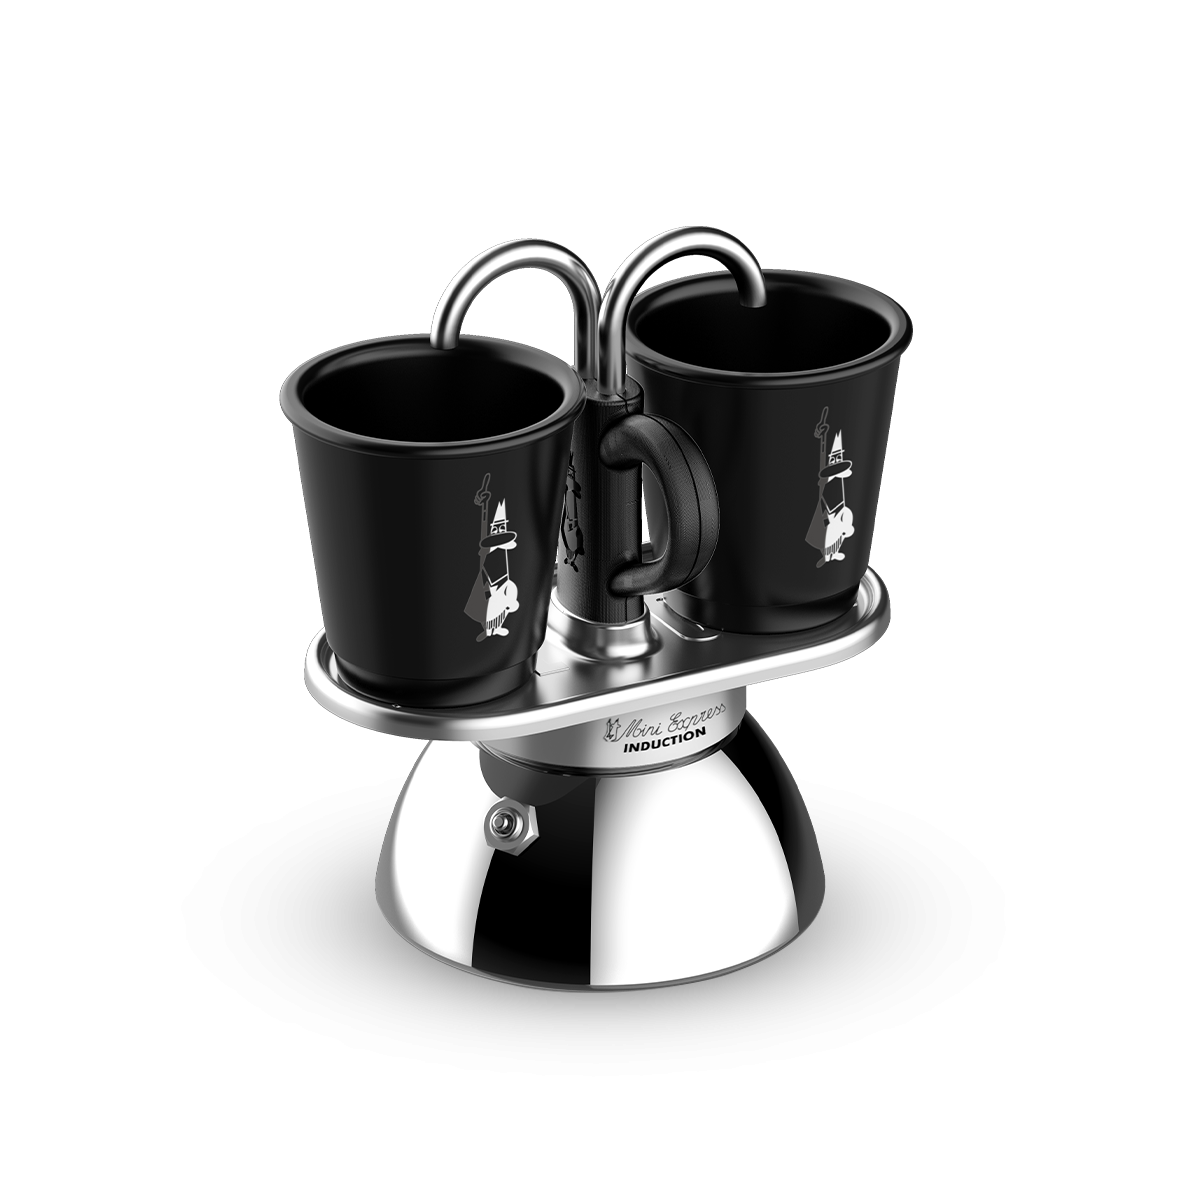 Bialetti Mini Express Cafetera de inducción, aluminio, negro, 2 tazas